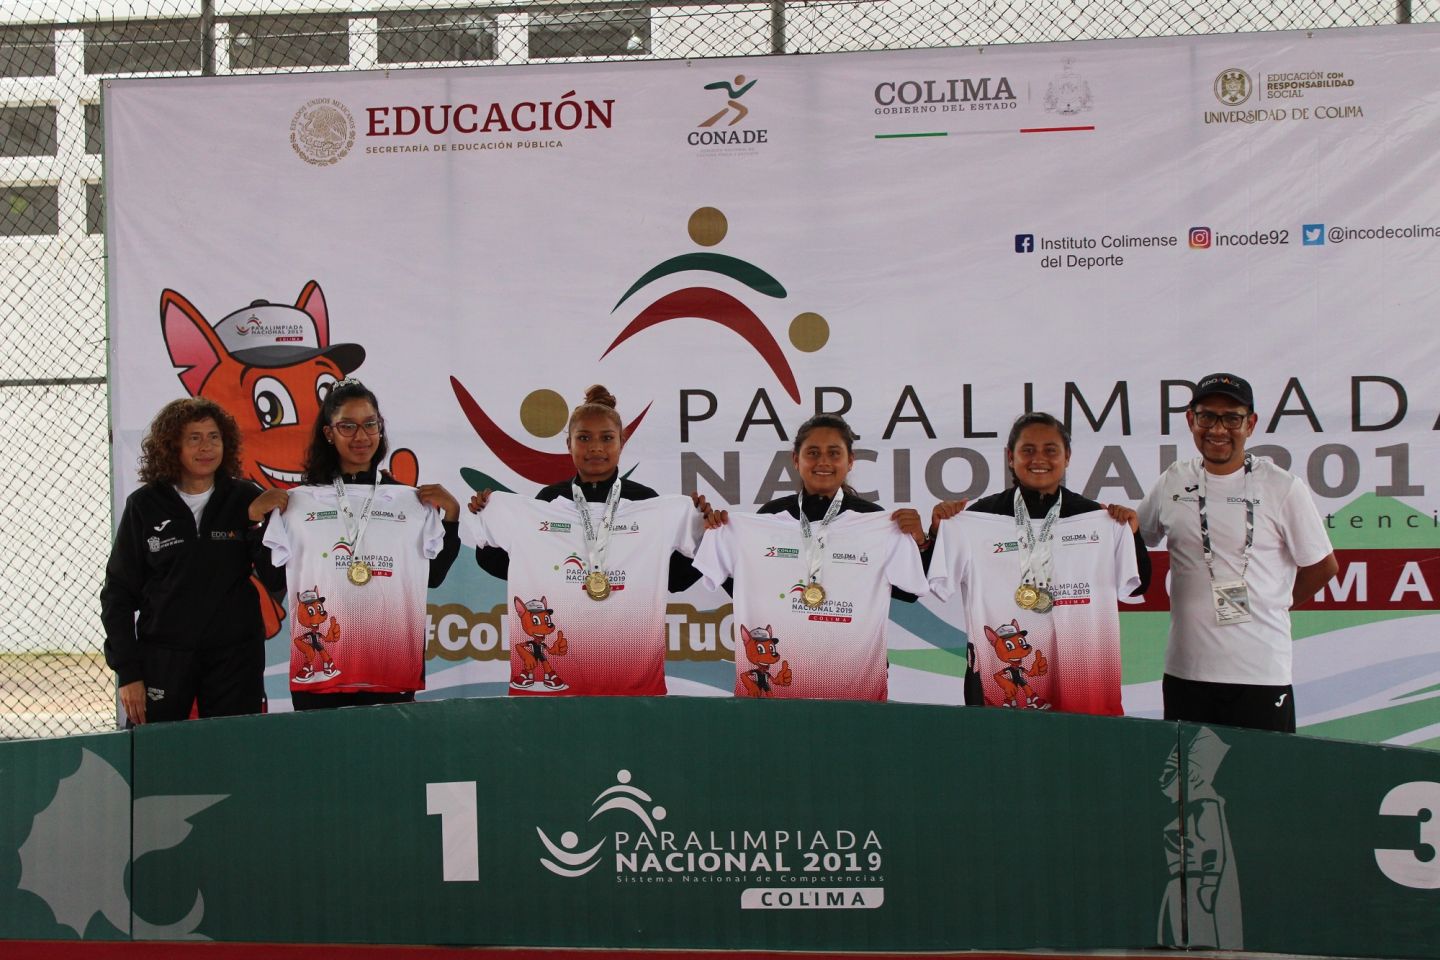 EDOMEX continúa cosechando medallas en Paralimpiada Nacional Colima 2019